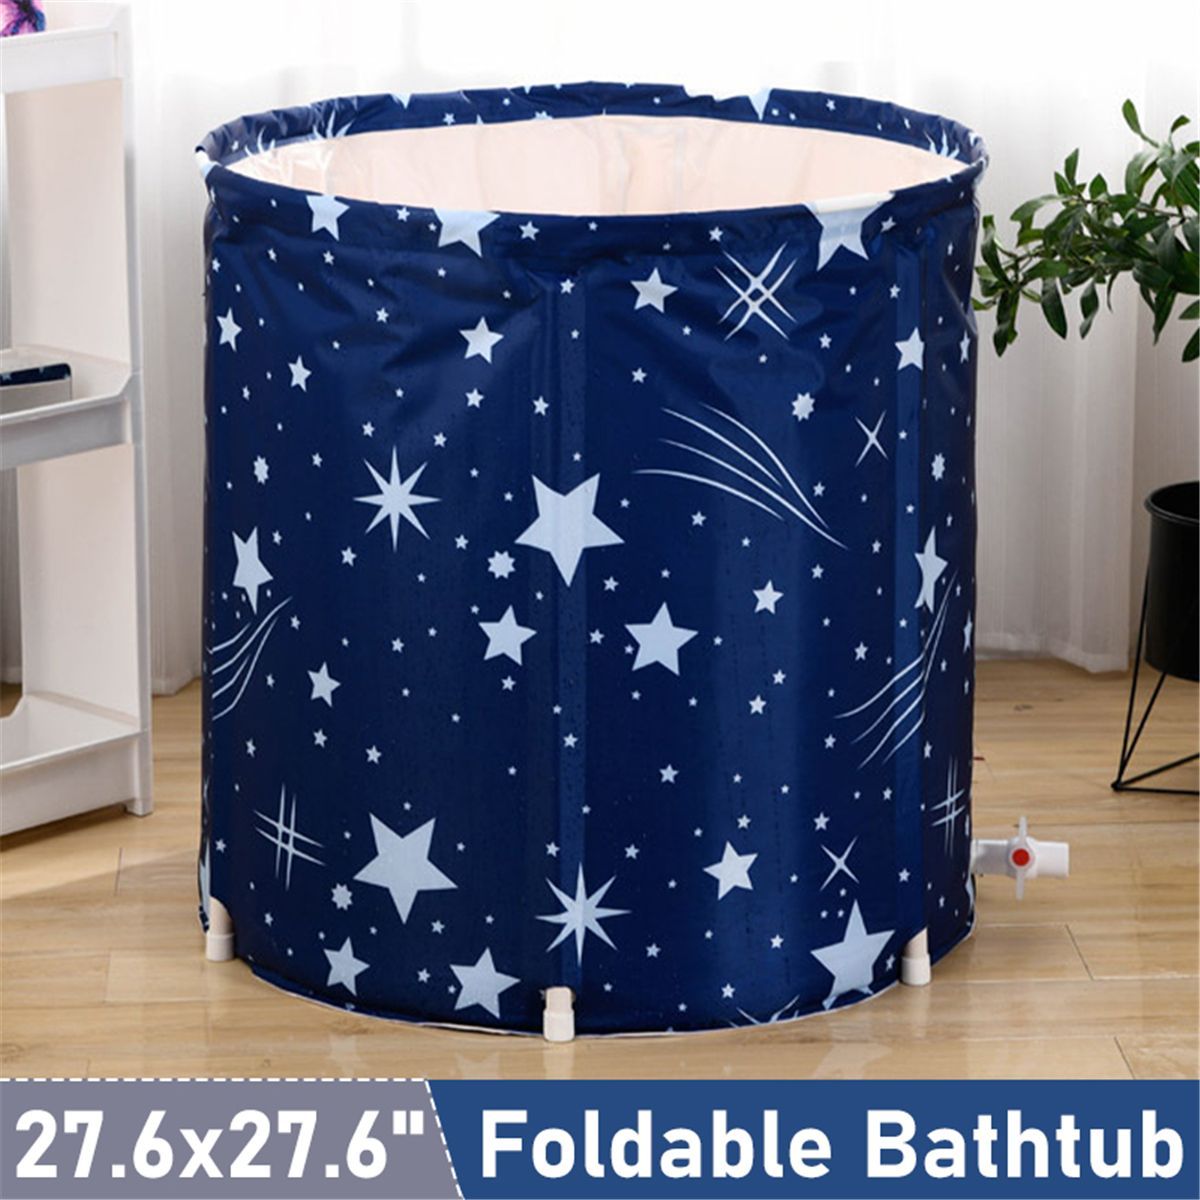 70x70cm-Portable-Bathtub-Foldable-Soaking-Bath-Tub-Barrel-Eco-Friendly-Spa-Folding-Bathtub-1767285